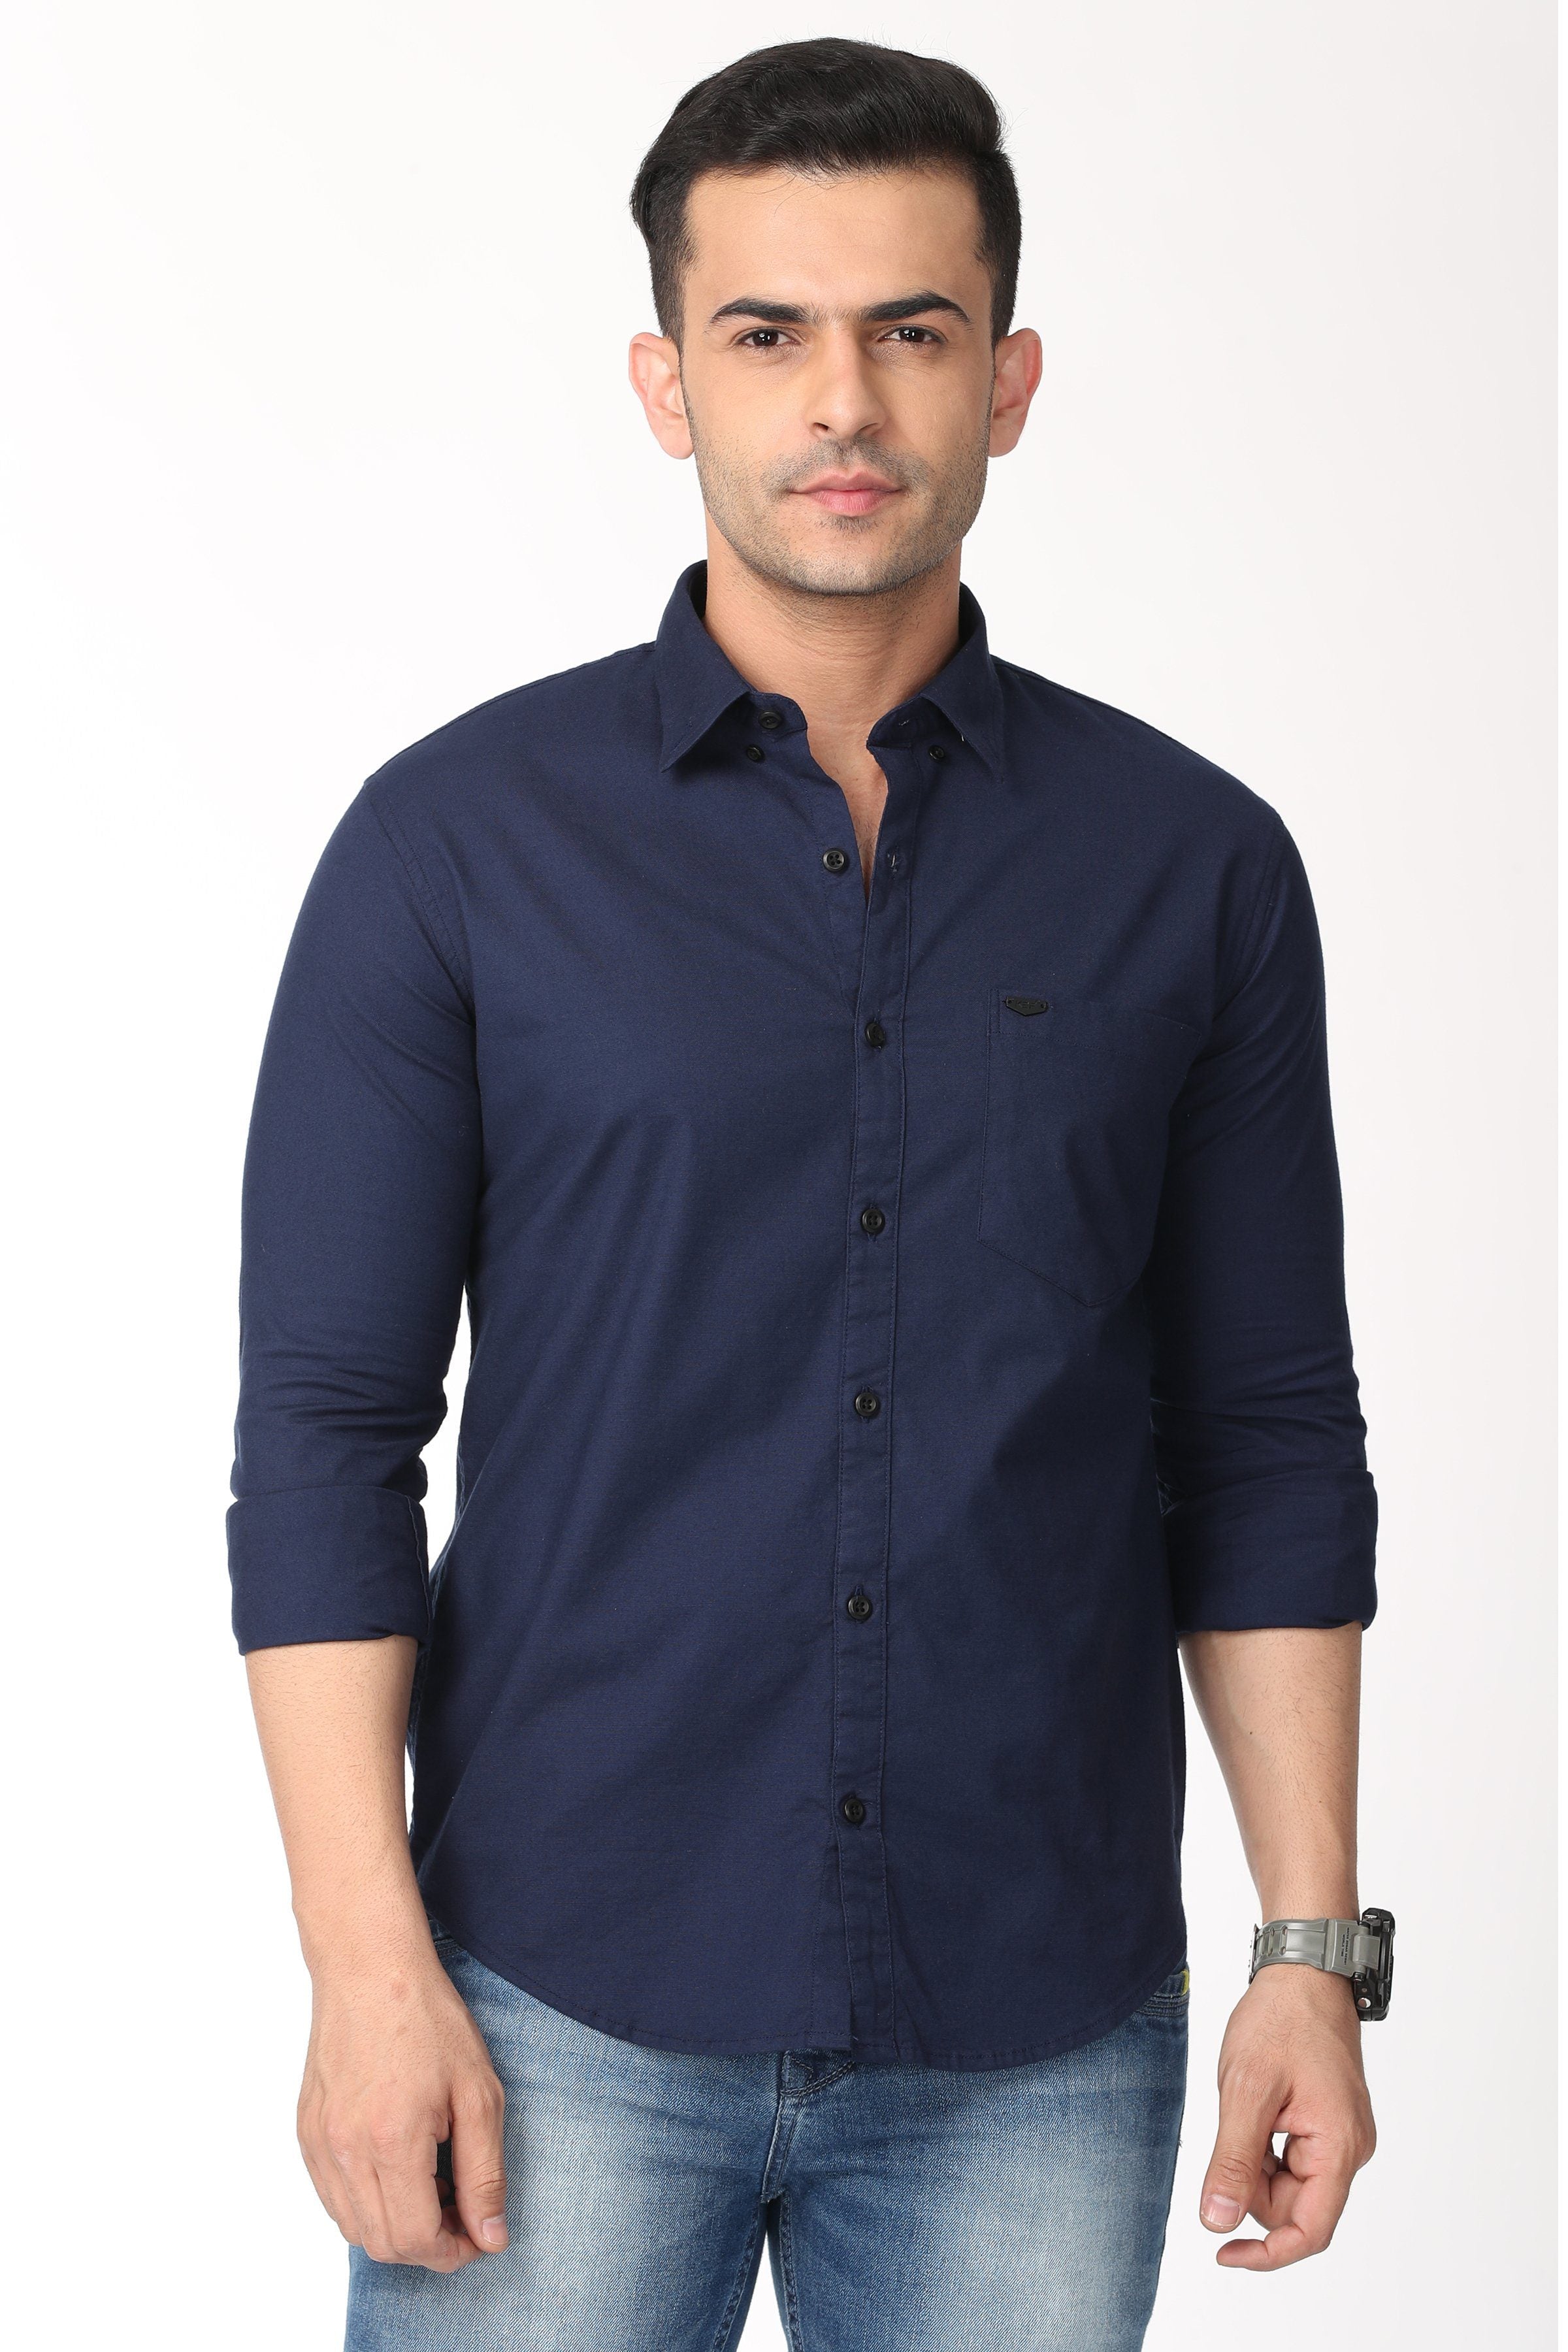 Elegant Dark Blue Full Sleeve Shirt Shirts KEF S 